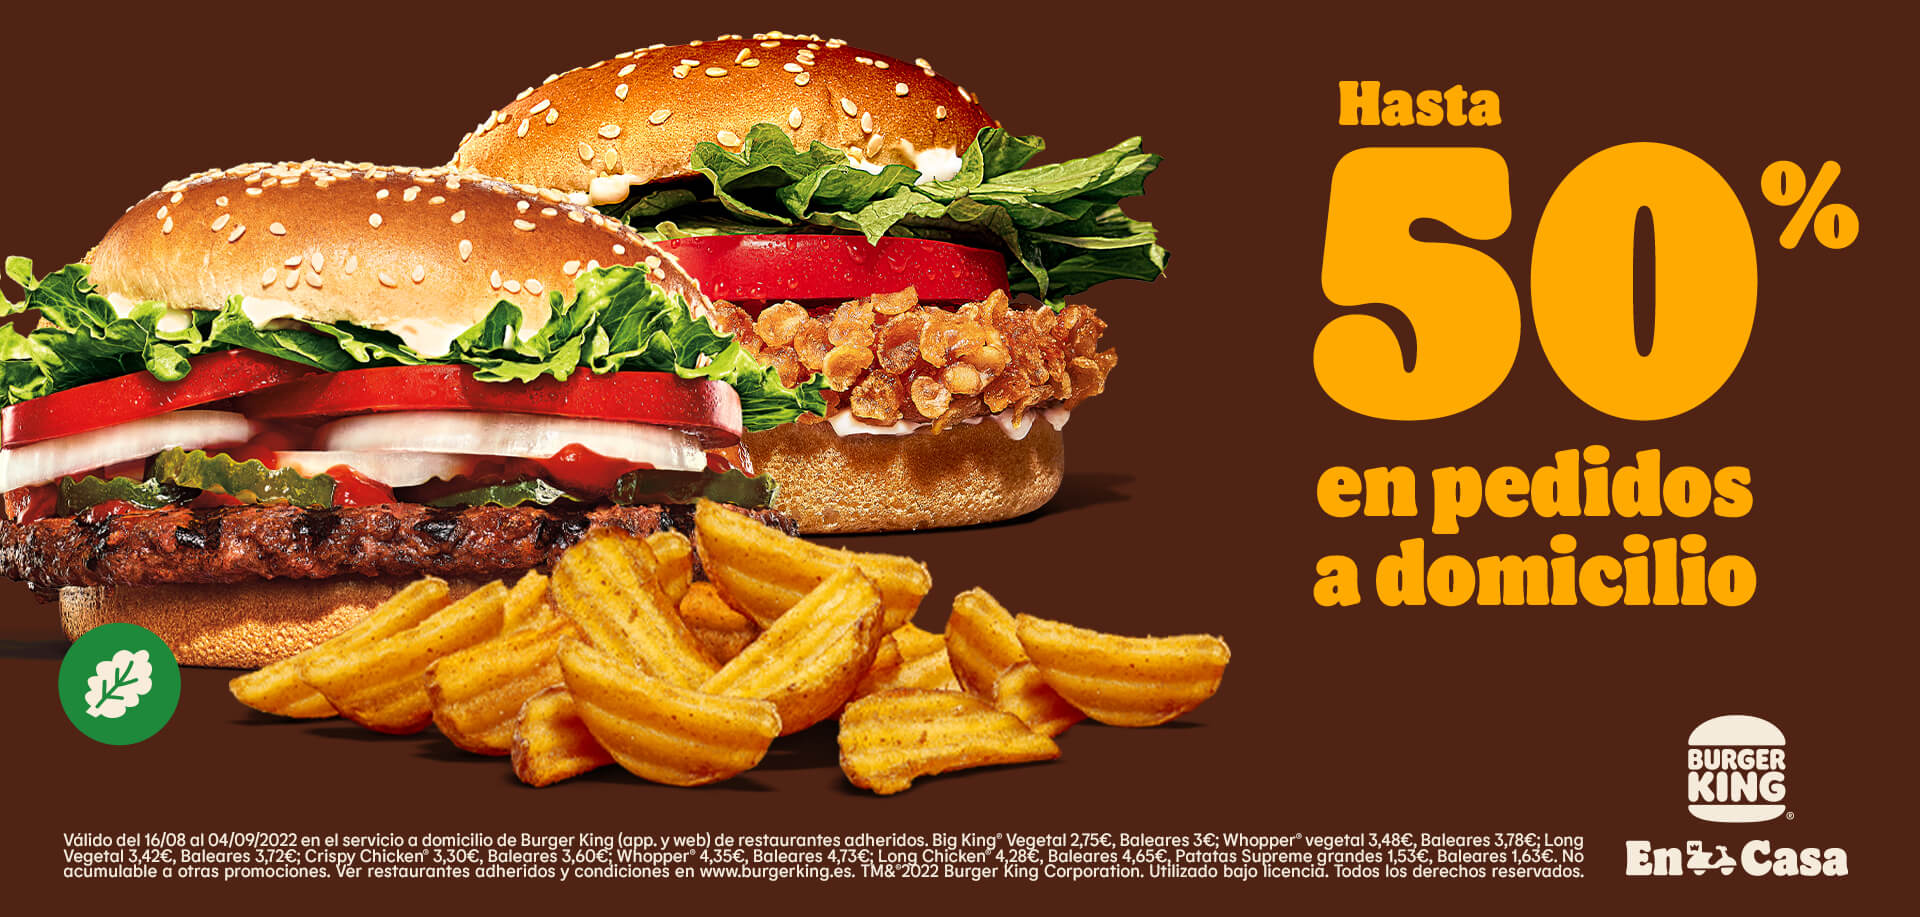 Hasta 50% de descuento en productos seleccionados en pedidos en el servicio a domicilio de Burger King (oferta válida en la app y web)